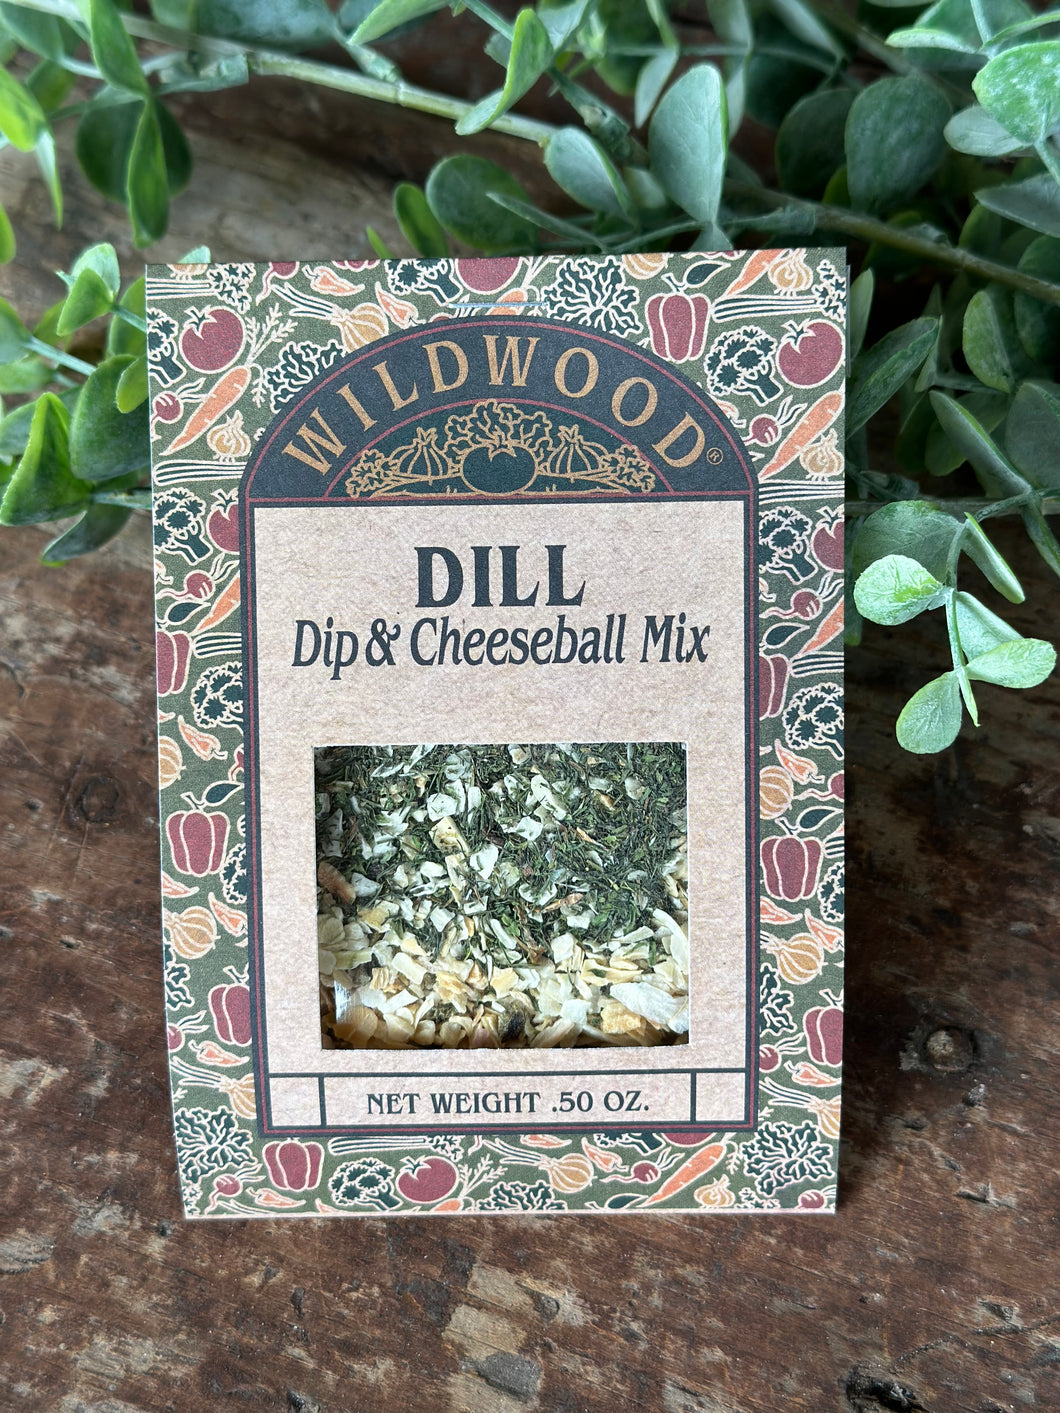 Wildwood Dill Dip Mix